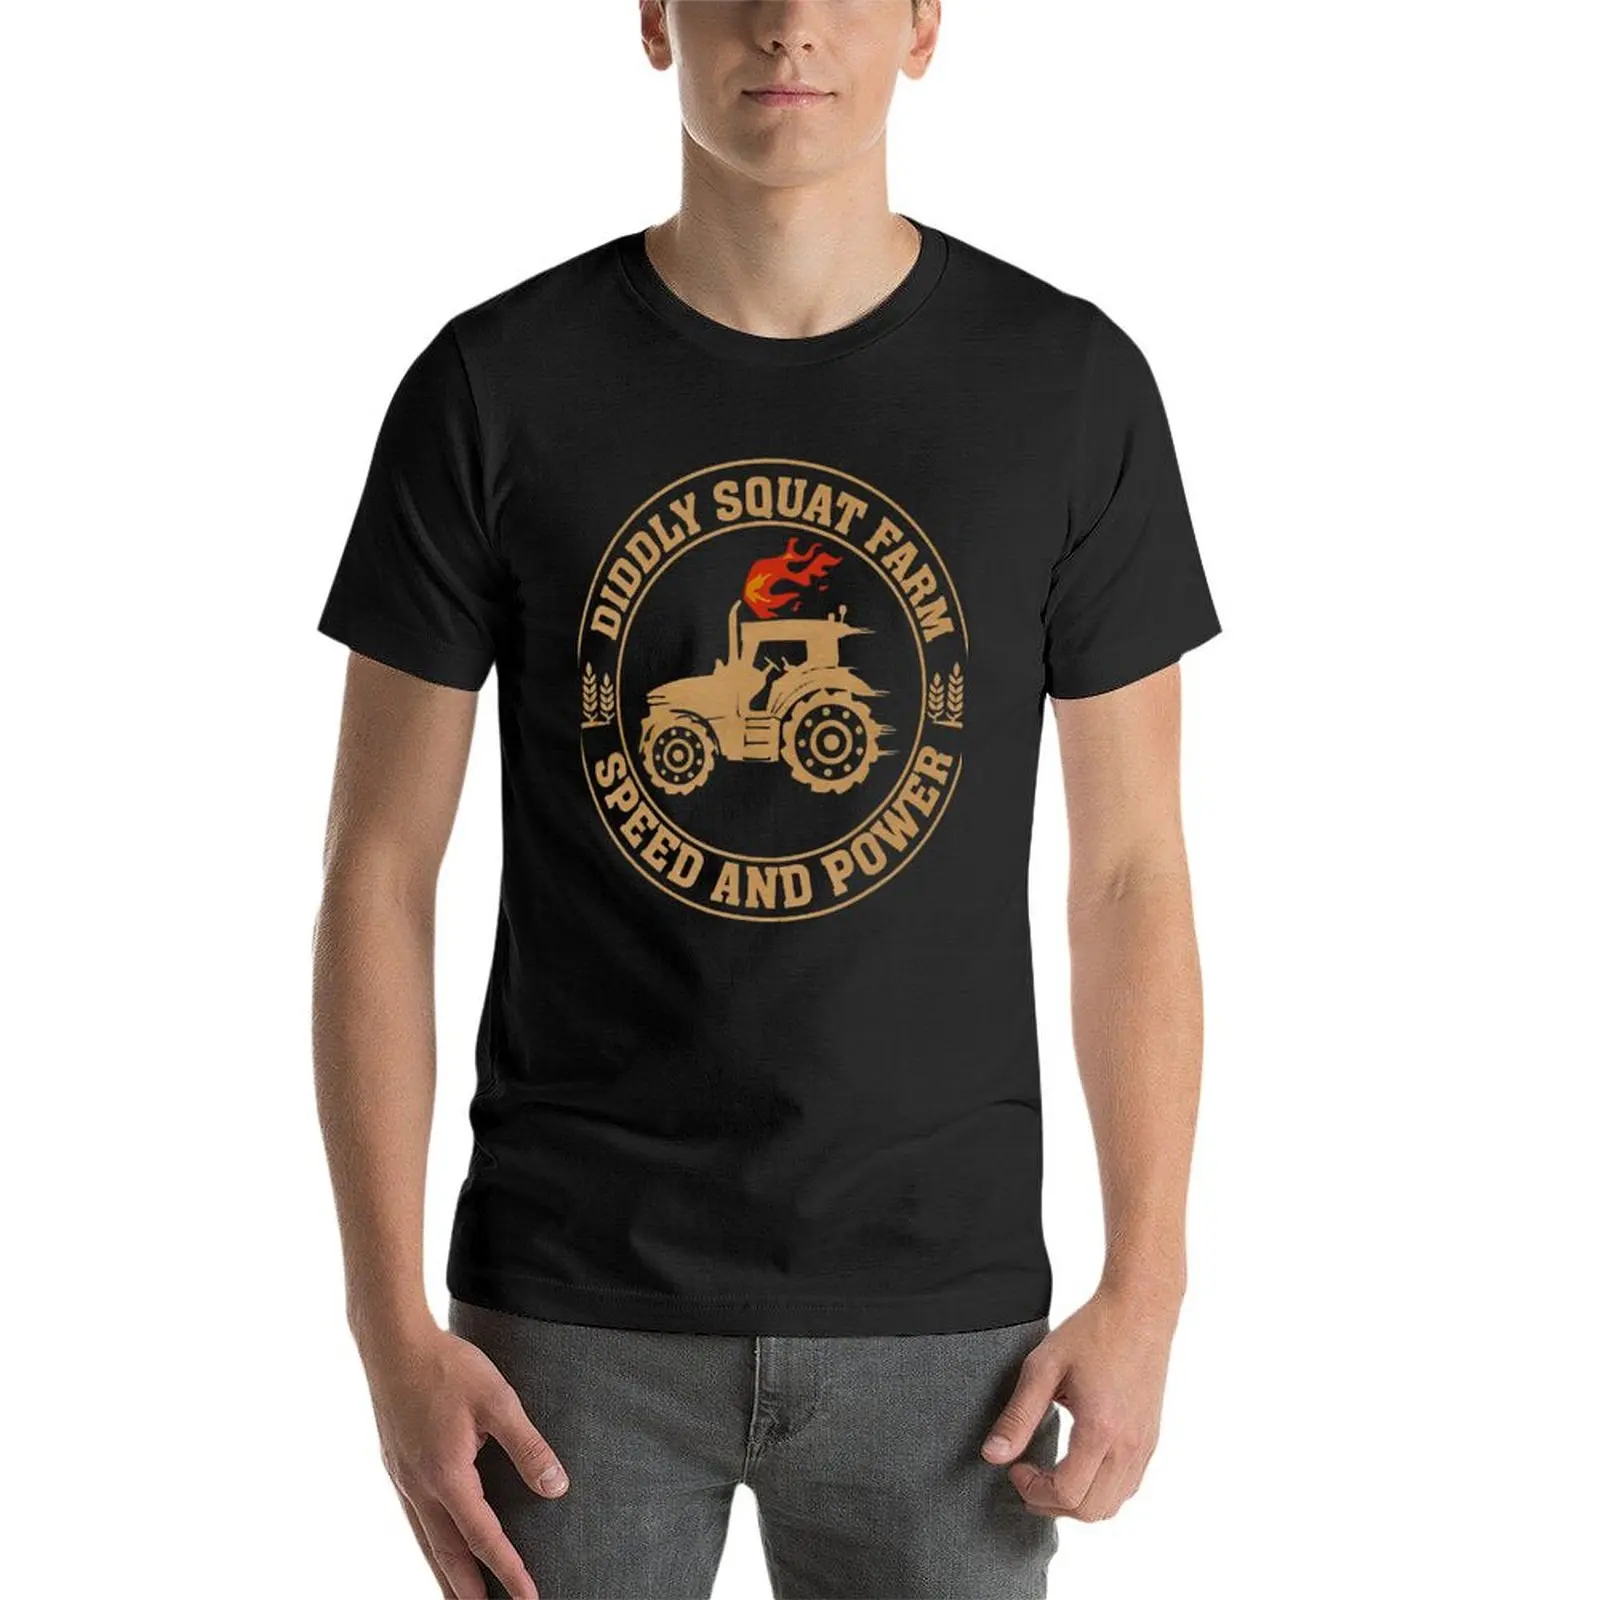 Perfekcyjny projekt ciągnika nie przykucał prędkości na farmie i mocnej koszulce letnie ubrania funnys t shirty dla mężczyzn